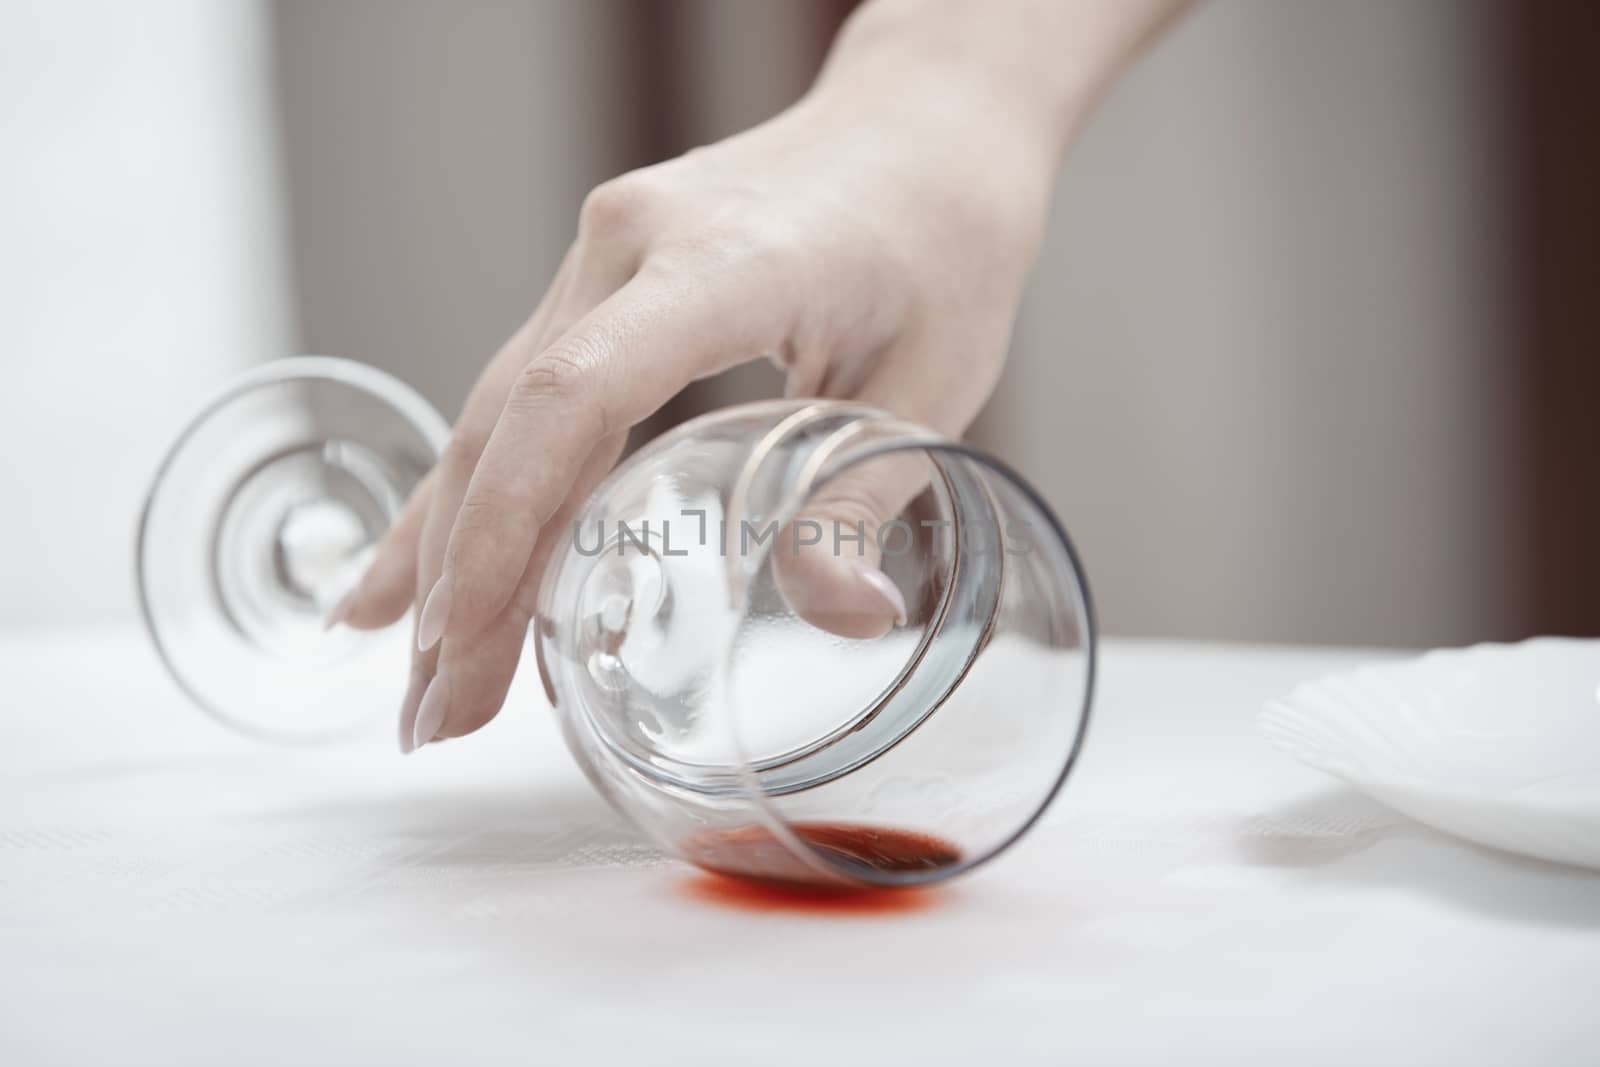 Human hand taking fallen wineglass